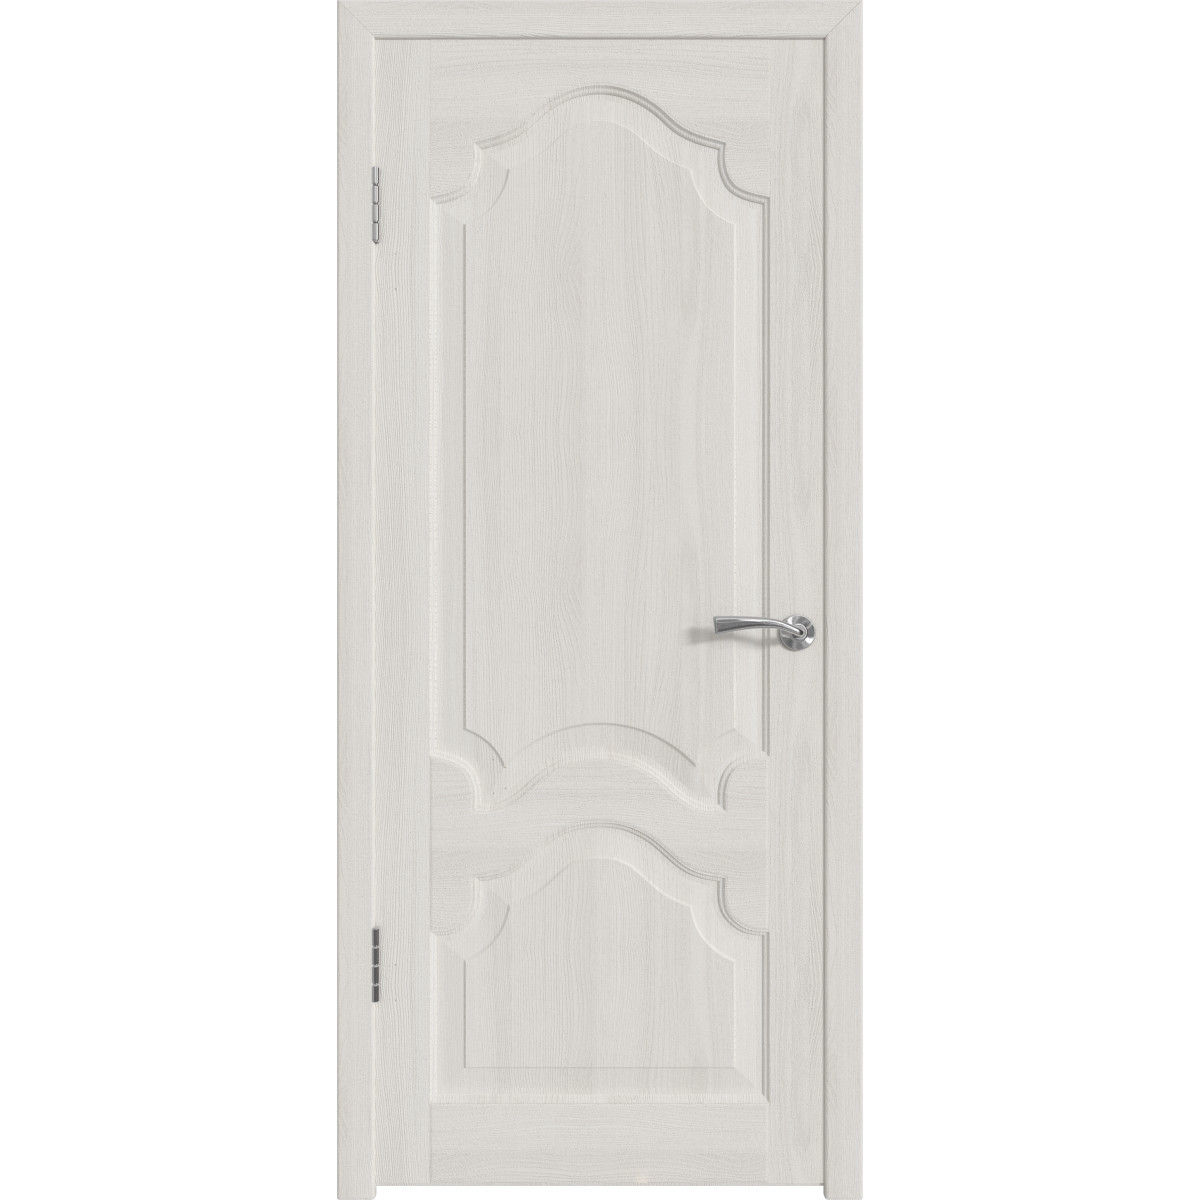 Дверь межкомнатная глухая с замком и петлями в комплекте Венеция 60x200 см ПП цвет белёный дуб